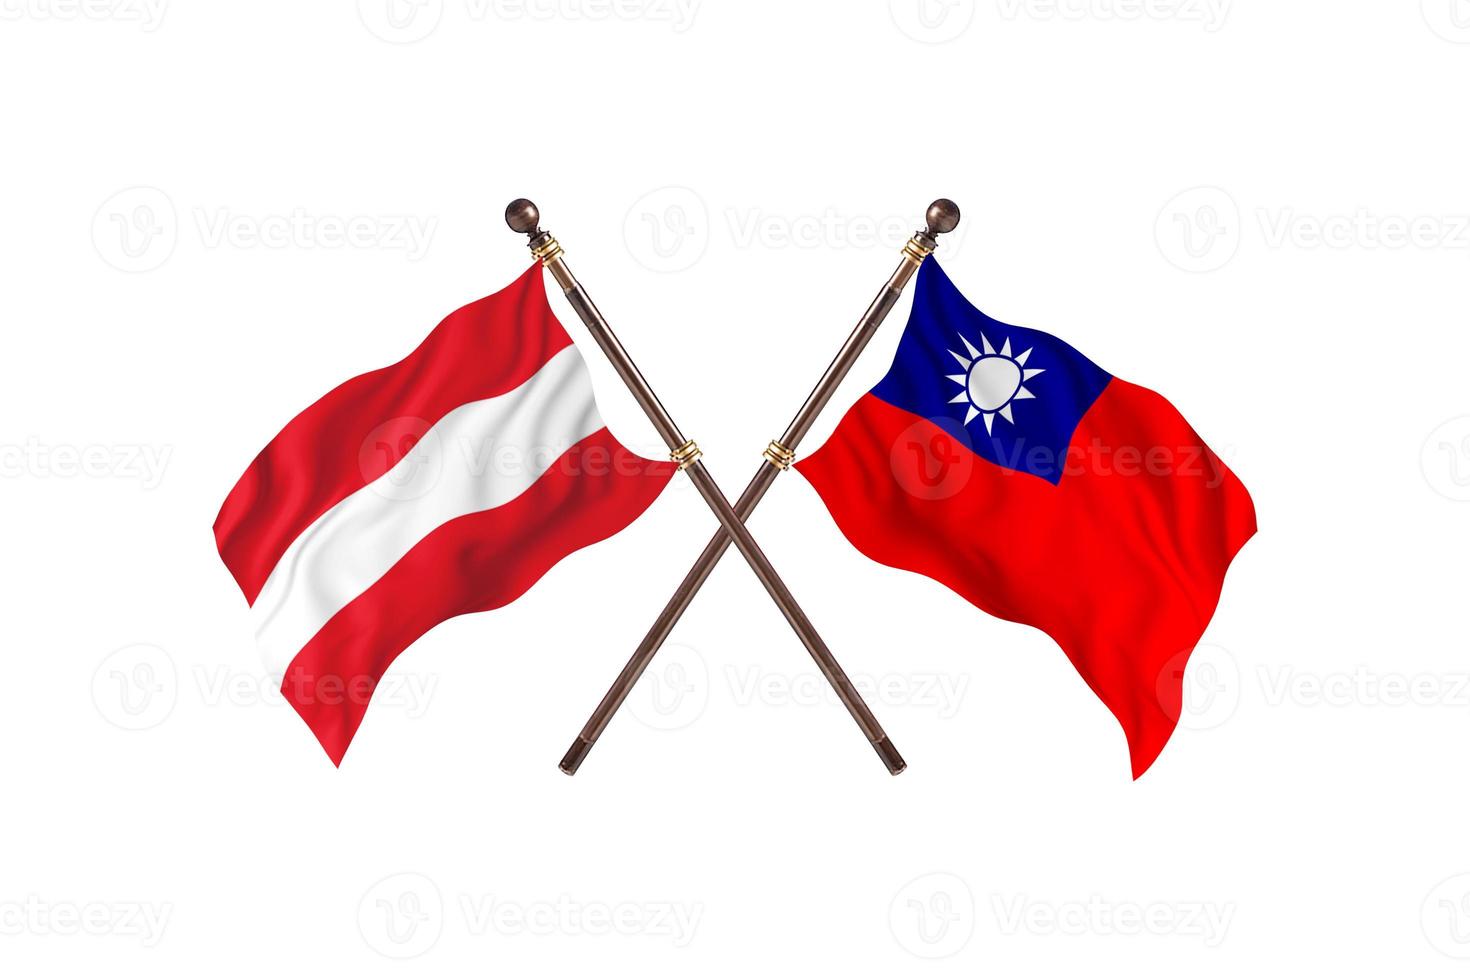 Oostenrijk versus Taiwan twee land vlaggen foto